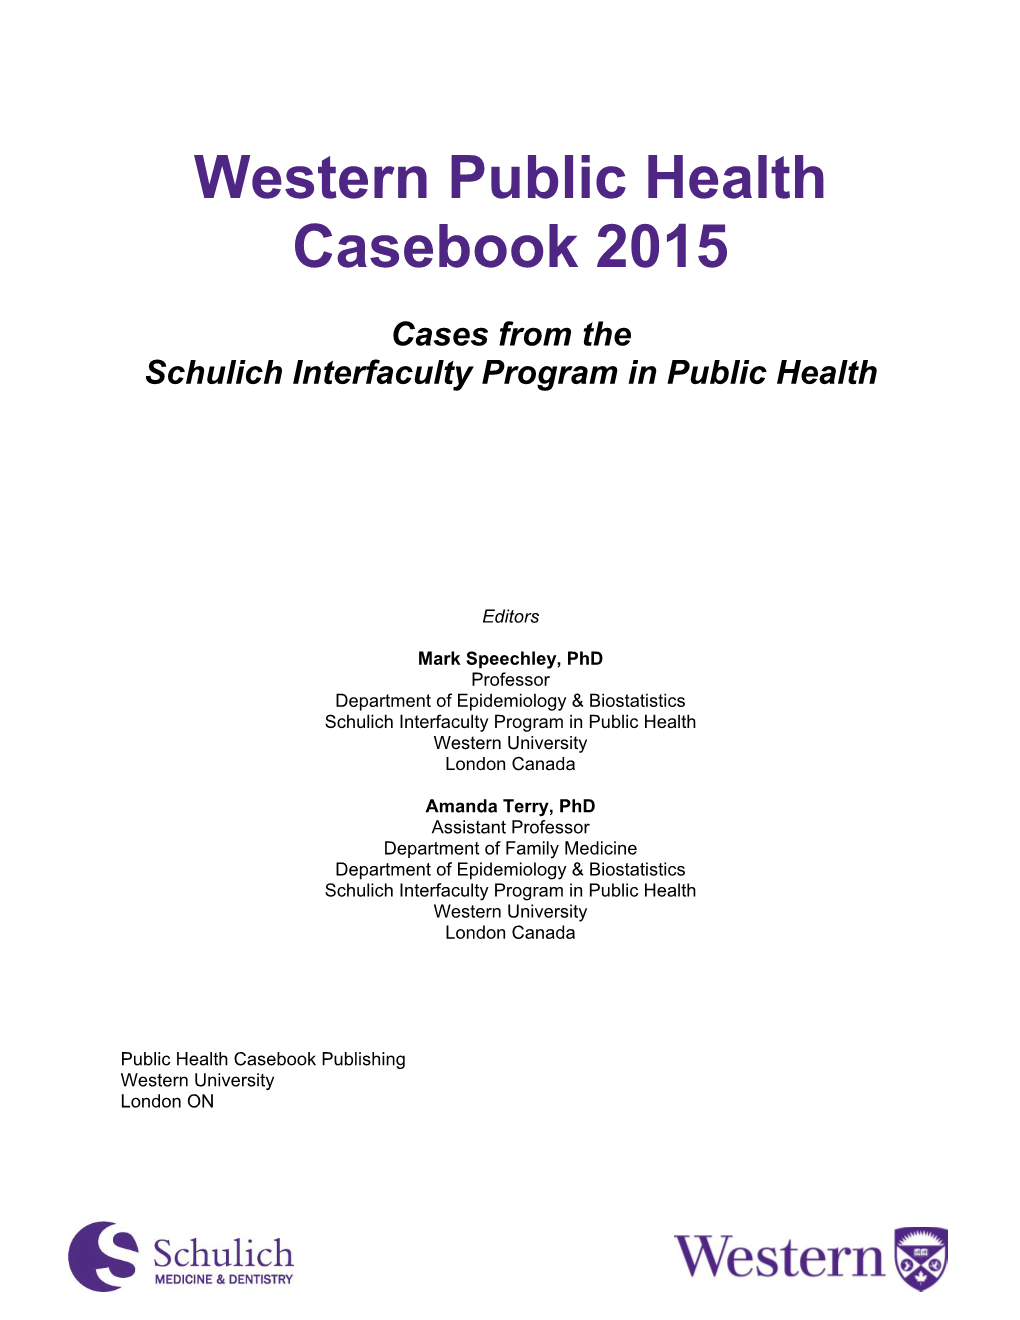 Western Public Health Casebook 2015